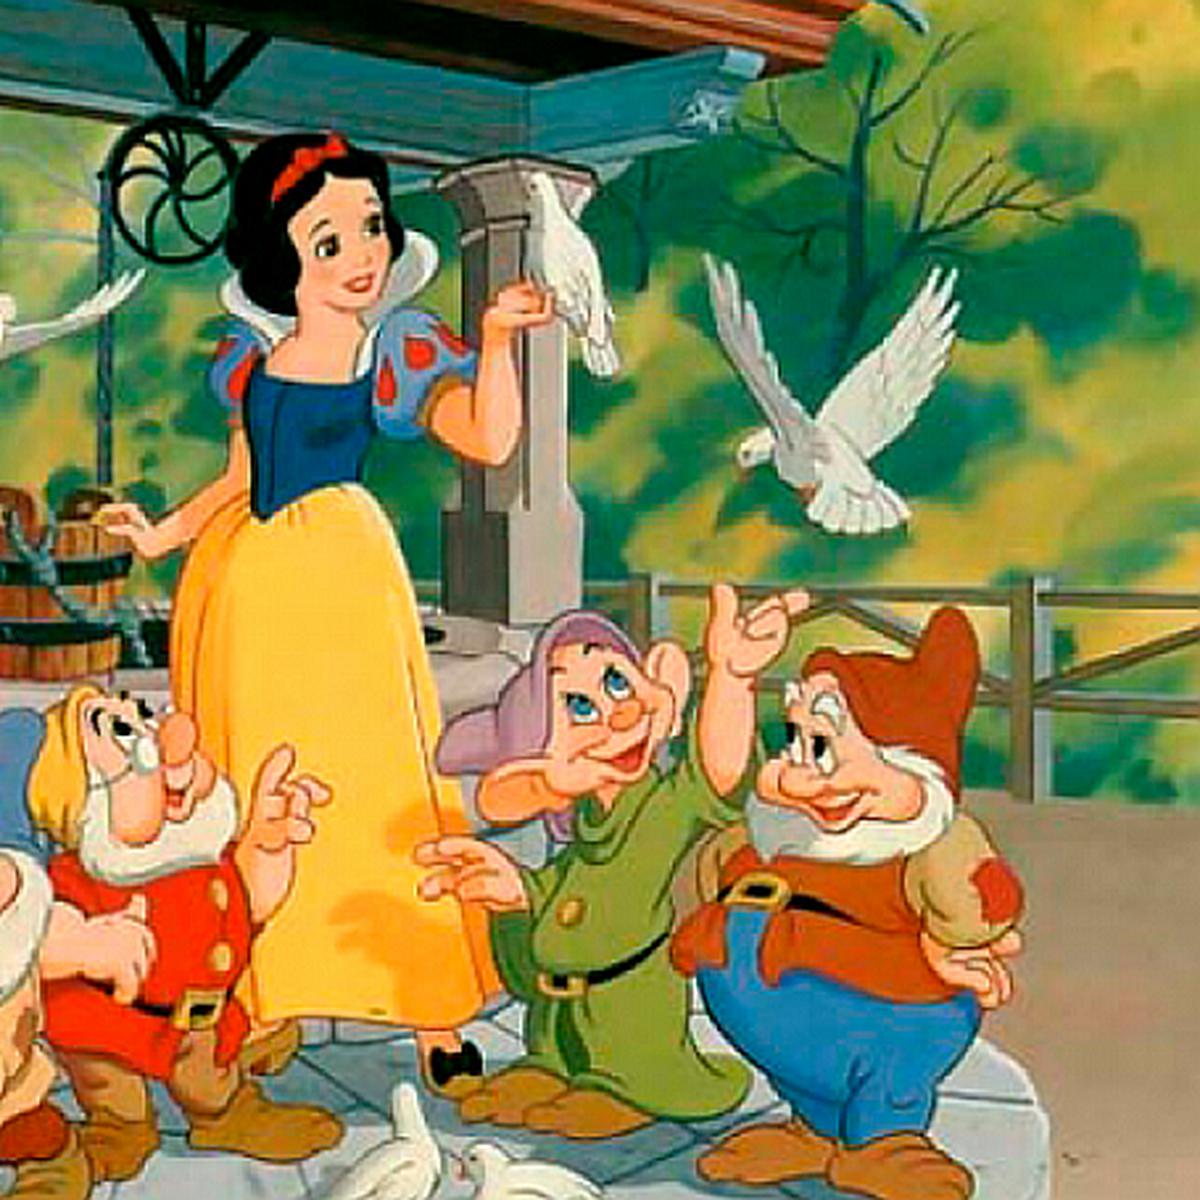 Blancanieves y los 7 enanitos': Disney prepara una película con actores  reales del clásico infantil | CULTURA | CORREO